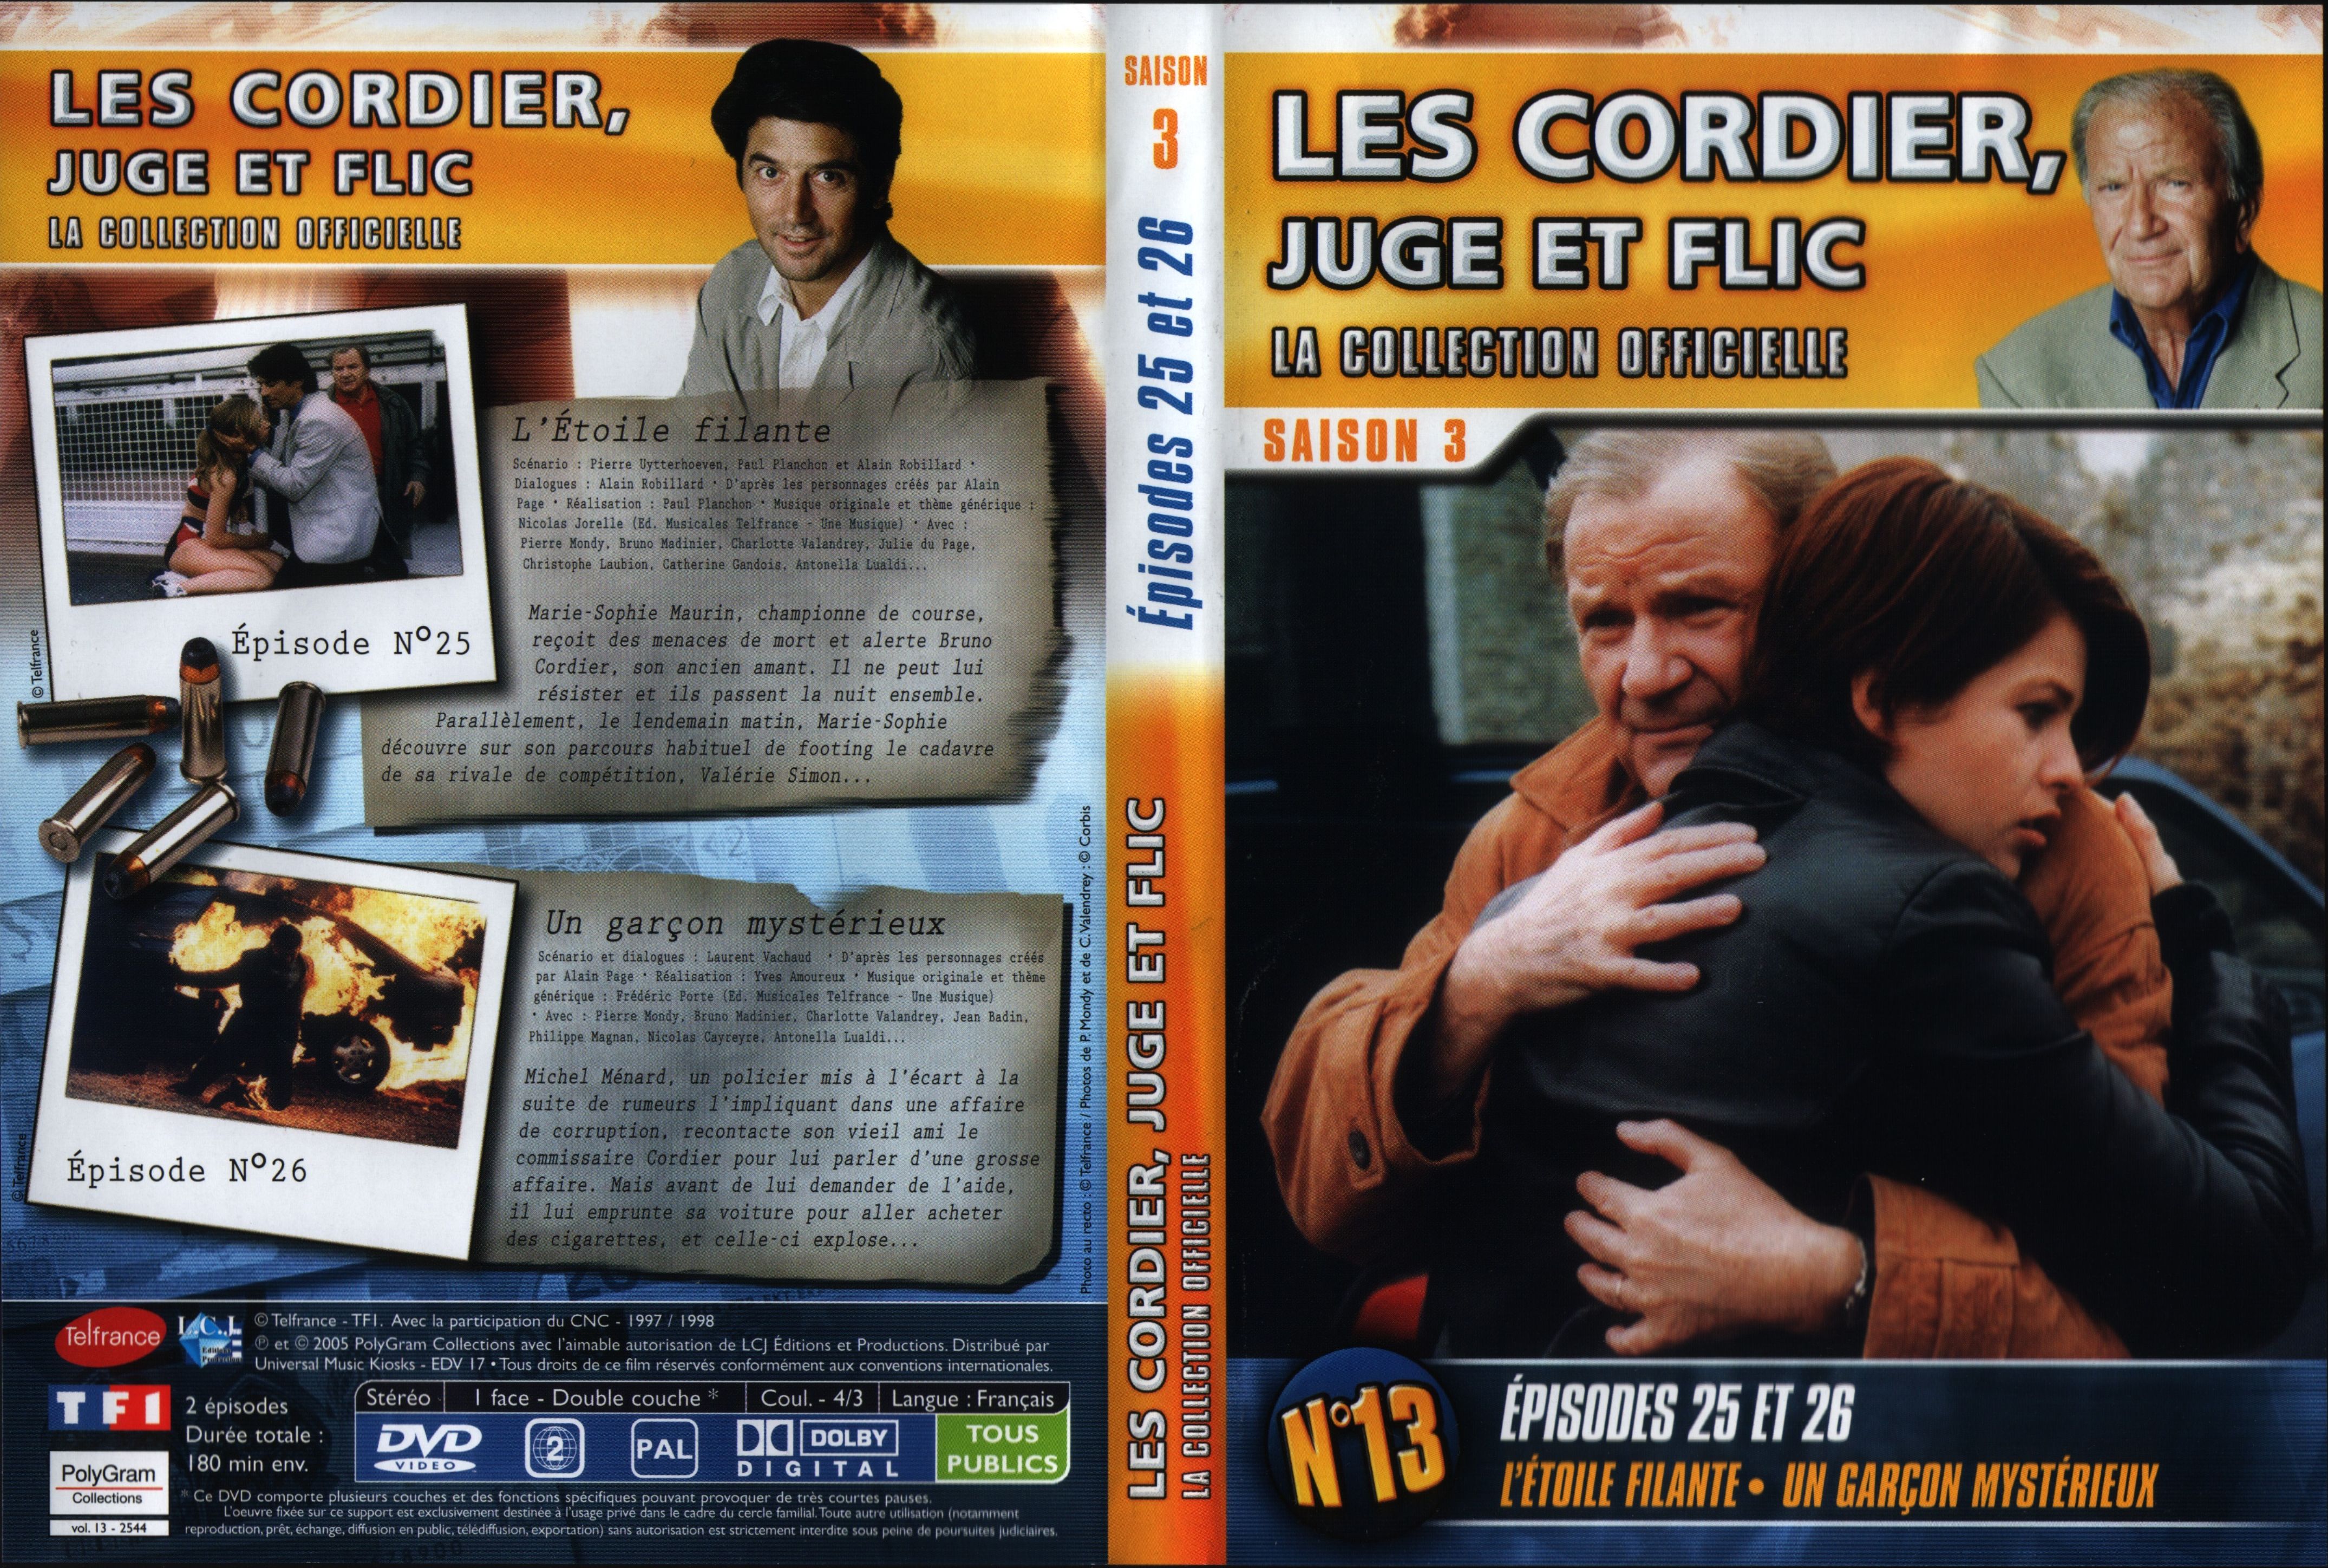 Jaquette DVD Les cordier juge et flic Saison 3 vol 13